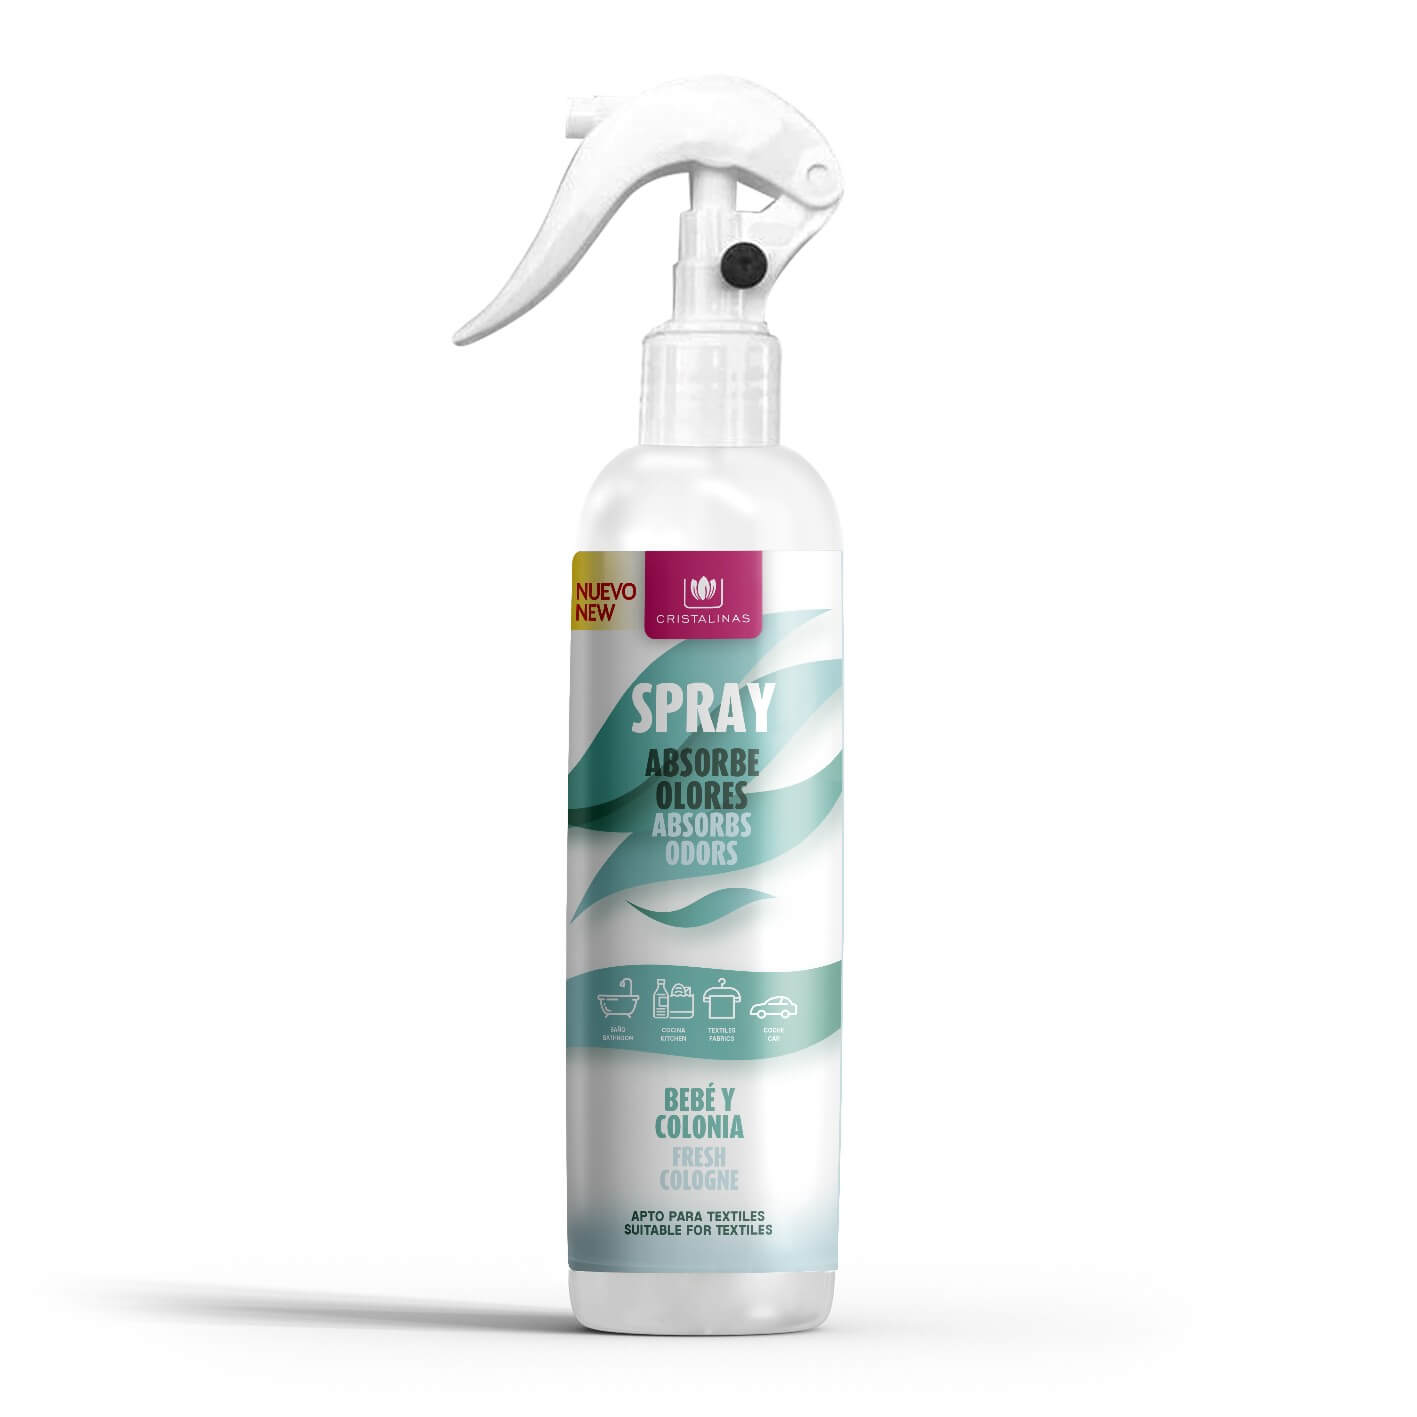 Spray Absorbe Olores: AMBAR PARFUMS SPRAY ABSORBE OLORES: Ambientador